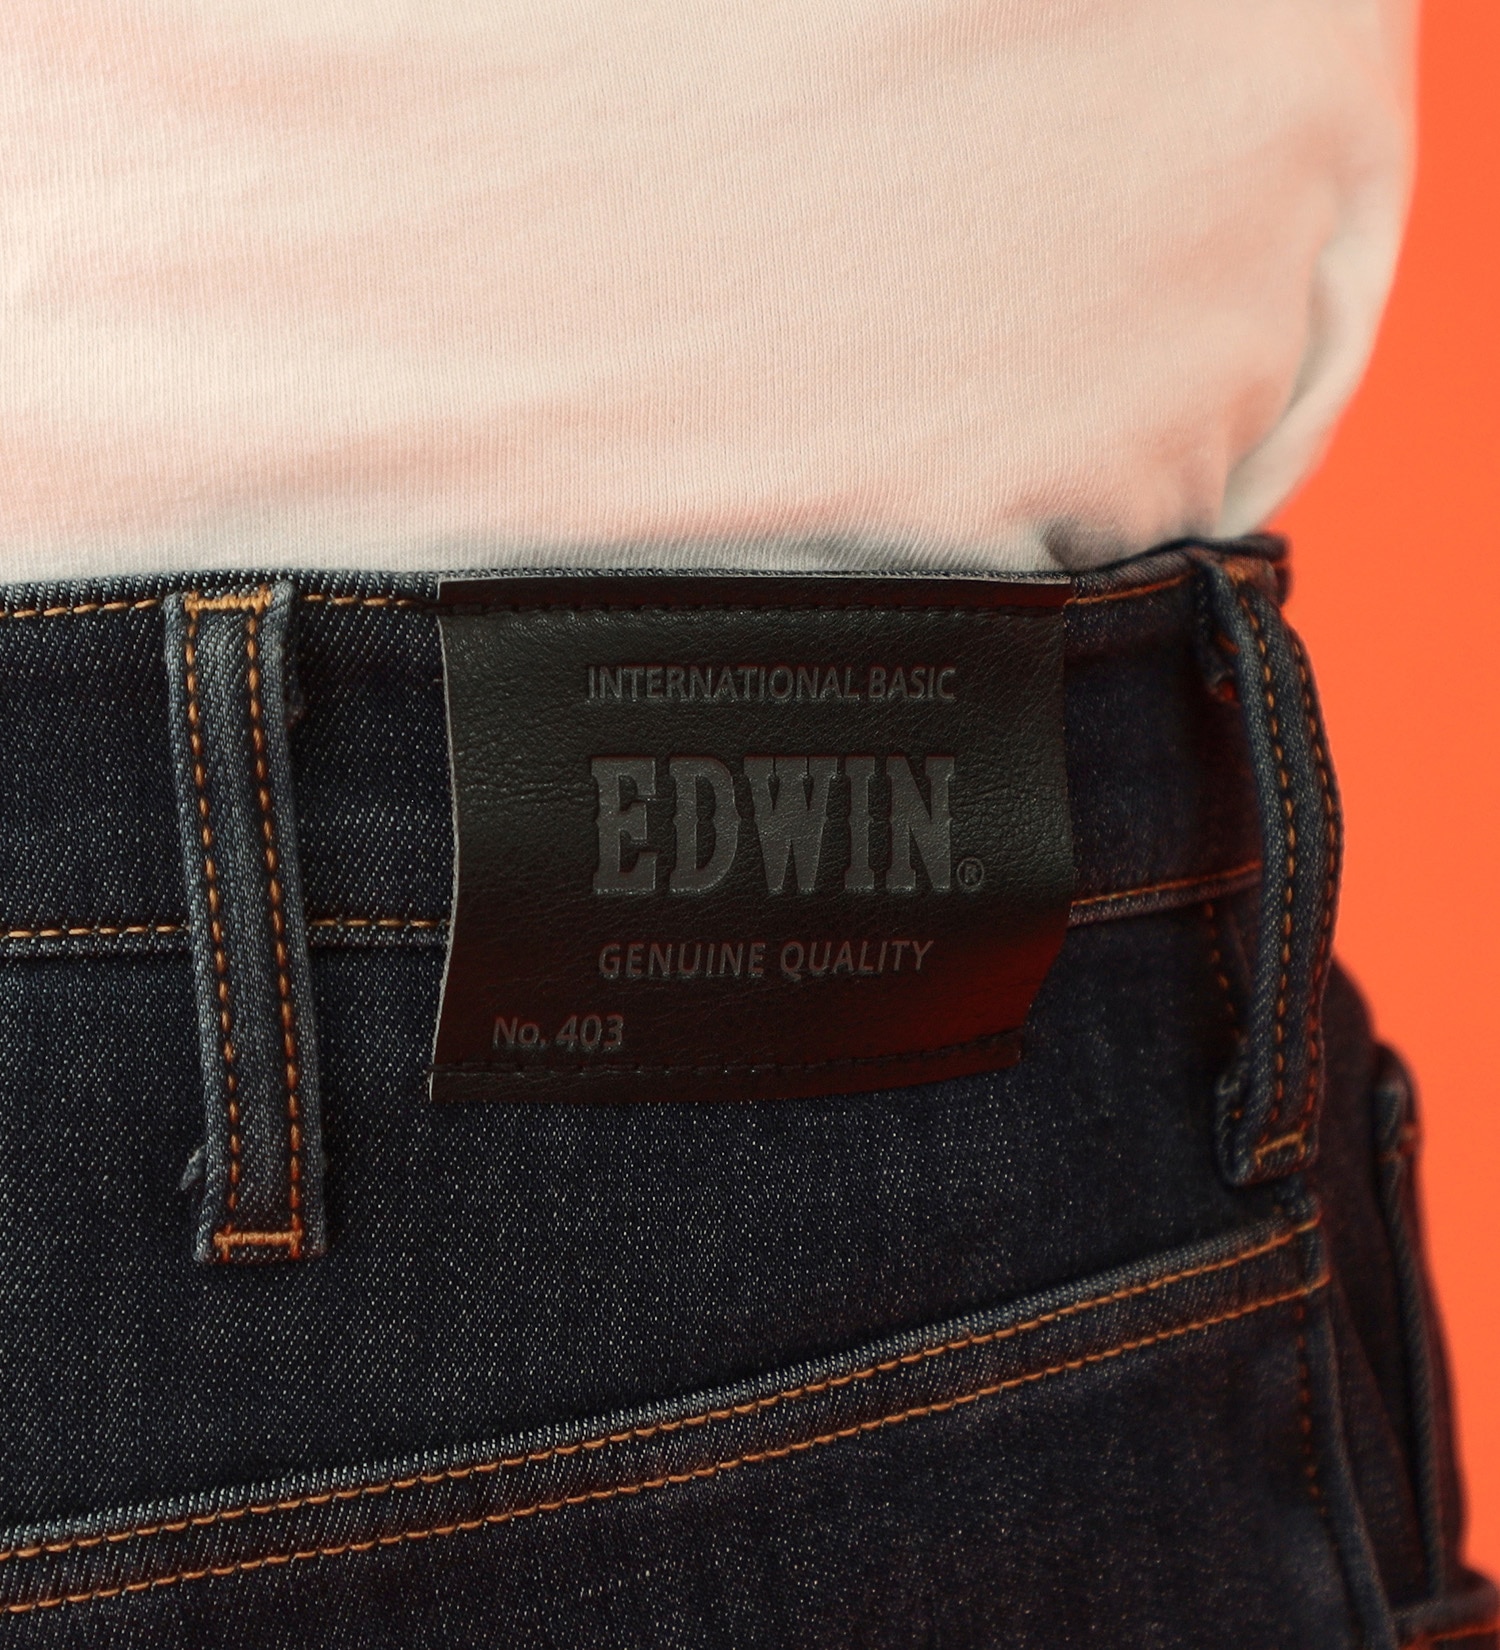 EDWIN(エドウイン)の【BLACKFRIDAY】【大きいサイズ】2層で暖かい EDWIN インターナショナルベーシック レギュラーストレートパンツ403 WILD FIRE 2層ボンディング構造 【暖】|パンツ/パンツ/メンズ|濃色ブルー